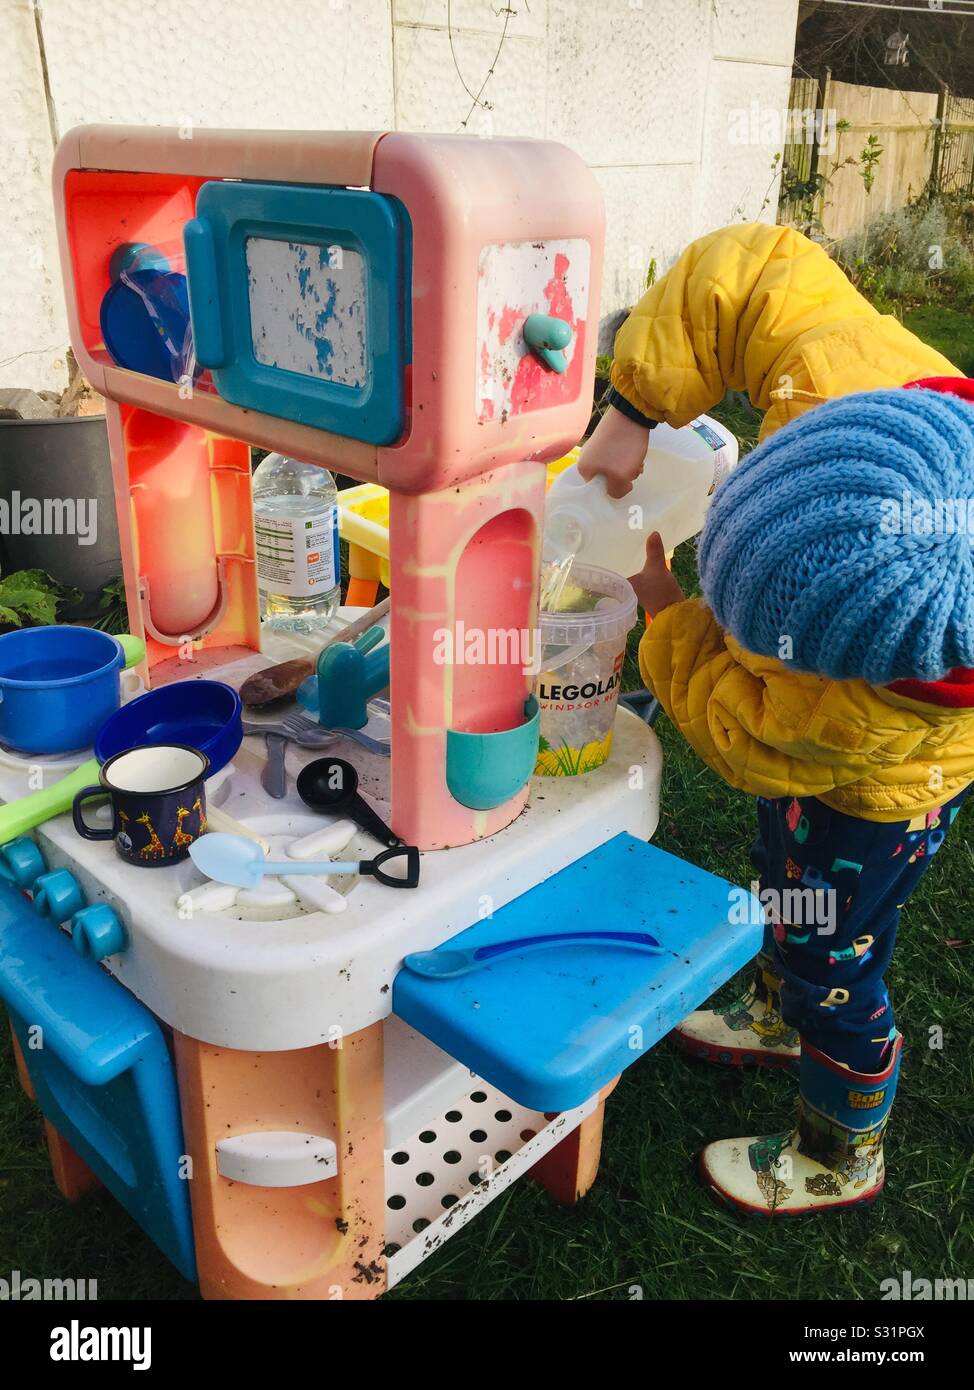 Kleinkind spielen messen Wasser spielen unordentlich Schlamm wasser Küche Garten im Freien junge WELLIES Stockfoto